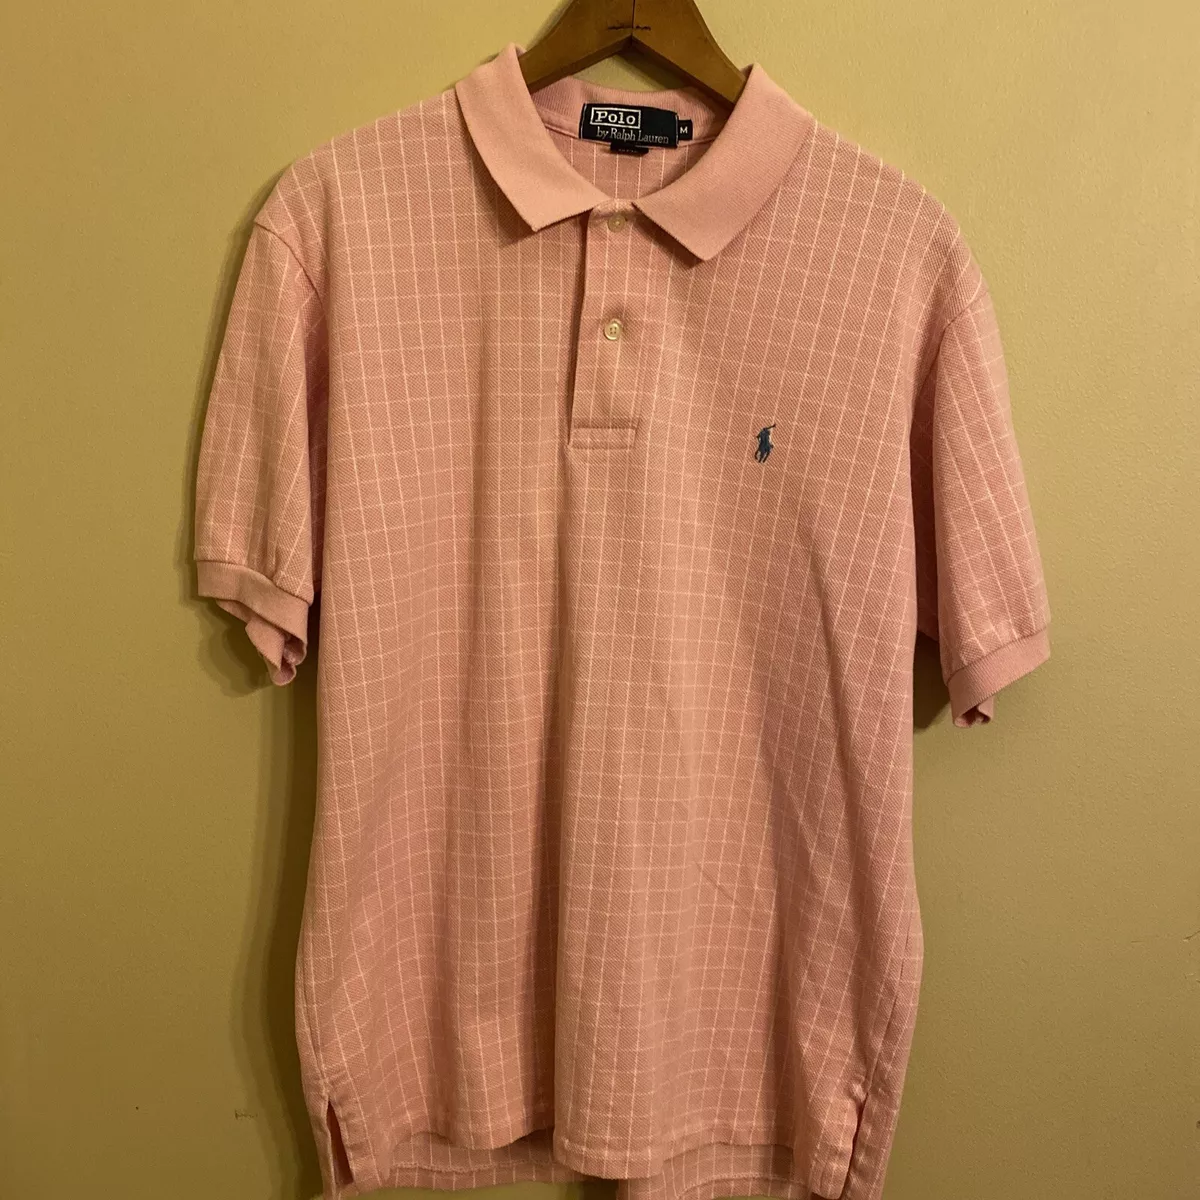 Vtg 90s Polo Ralph Lauren Mens Sz M ShortSleeve Button Up Shirt 